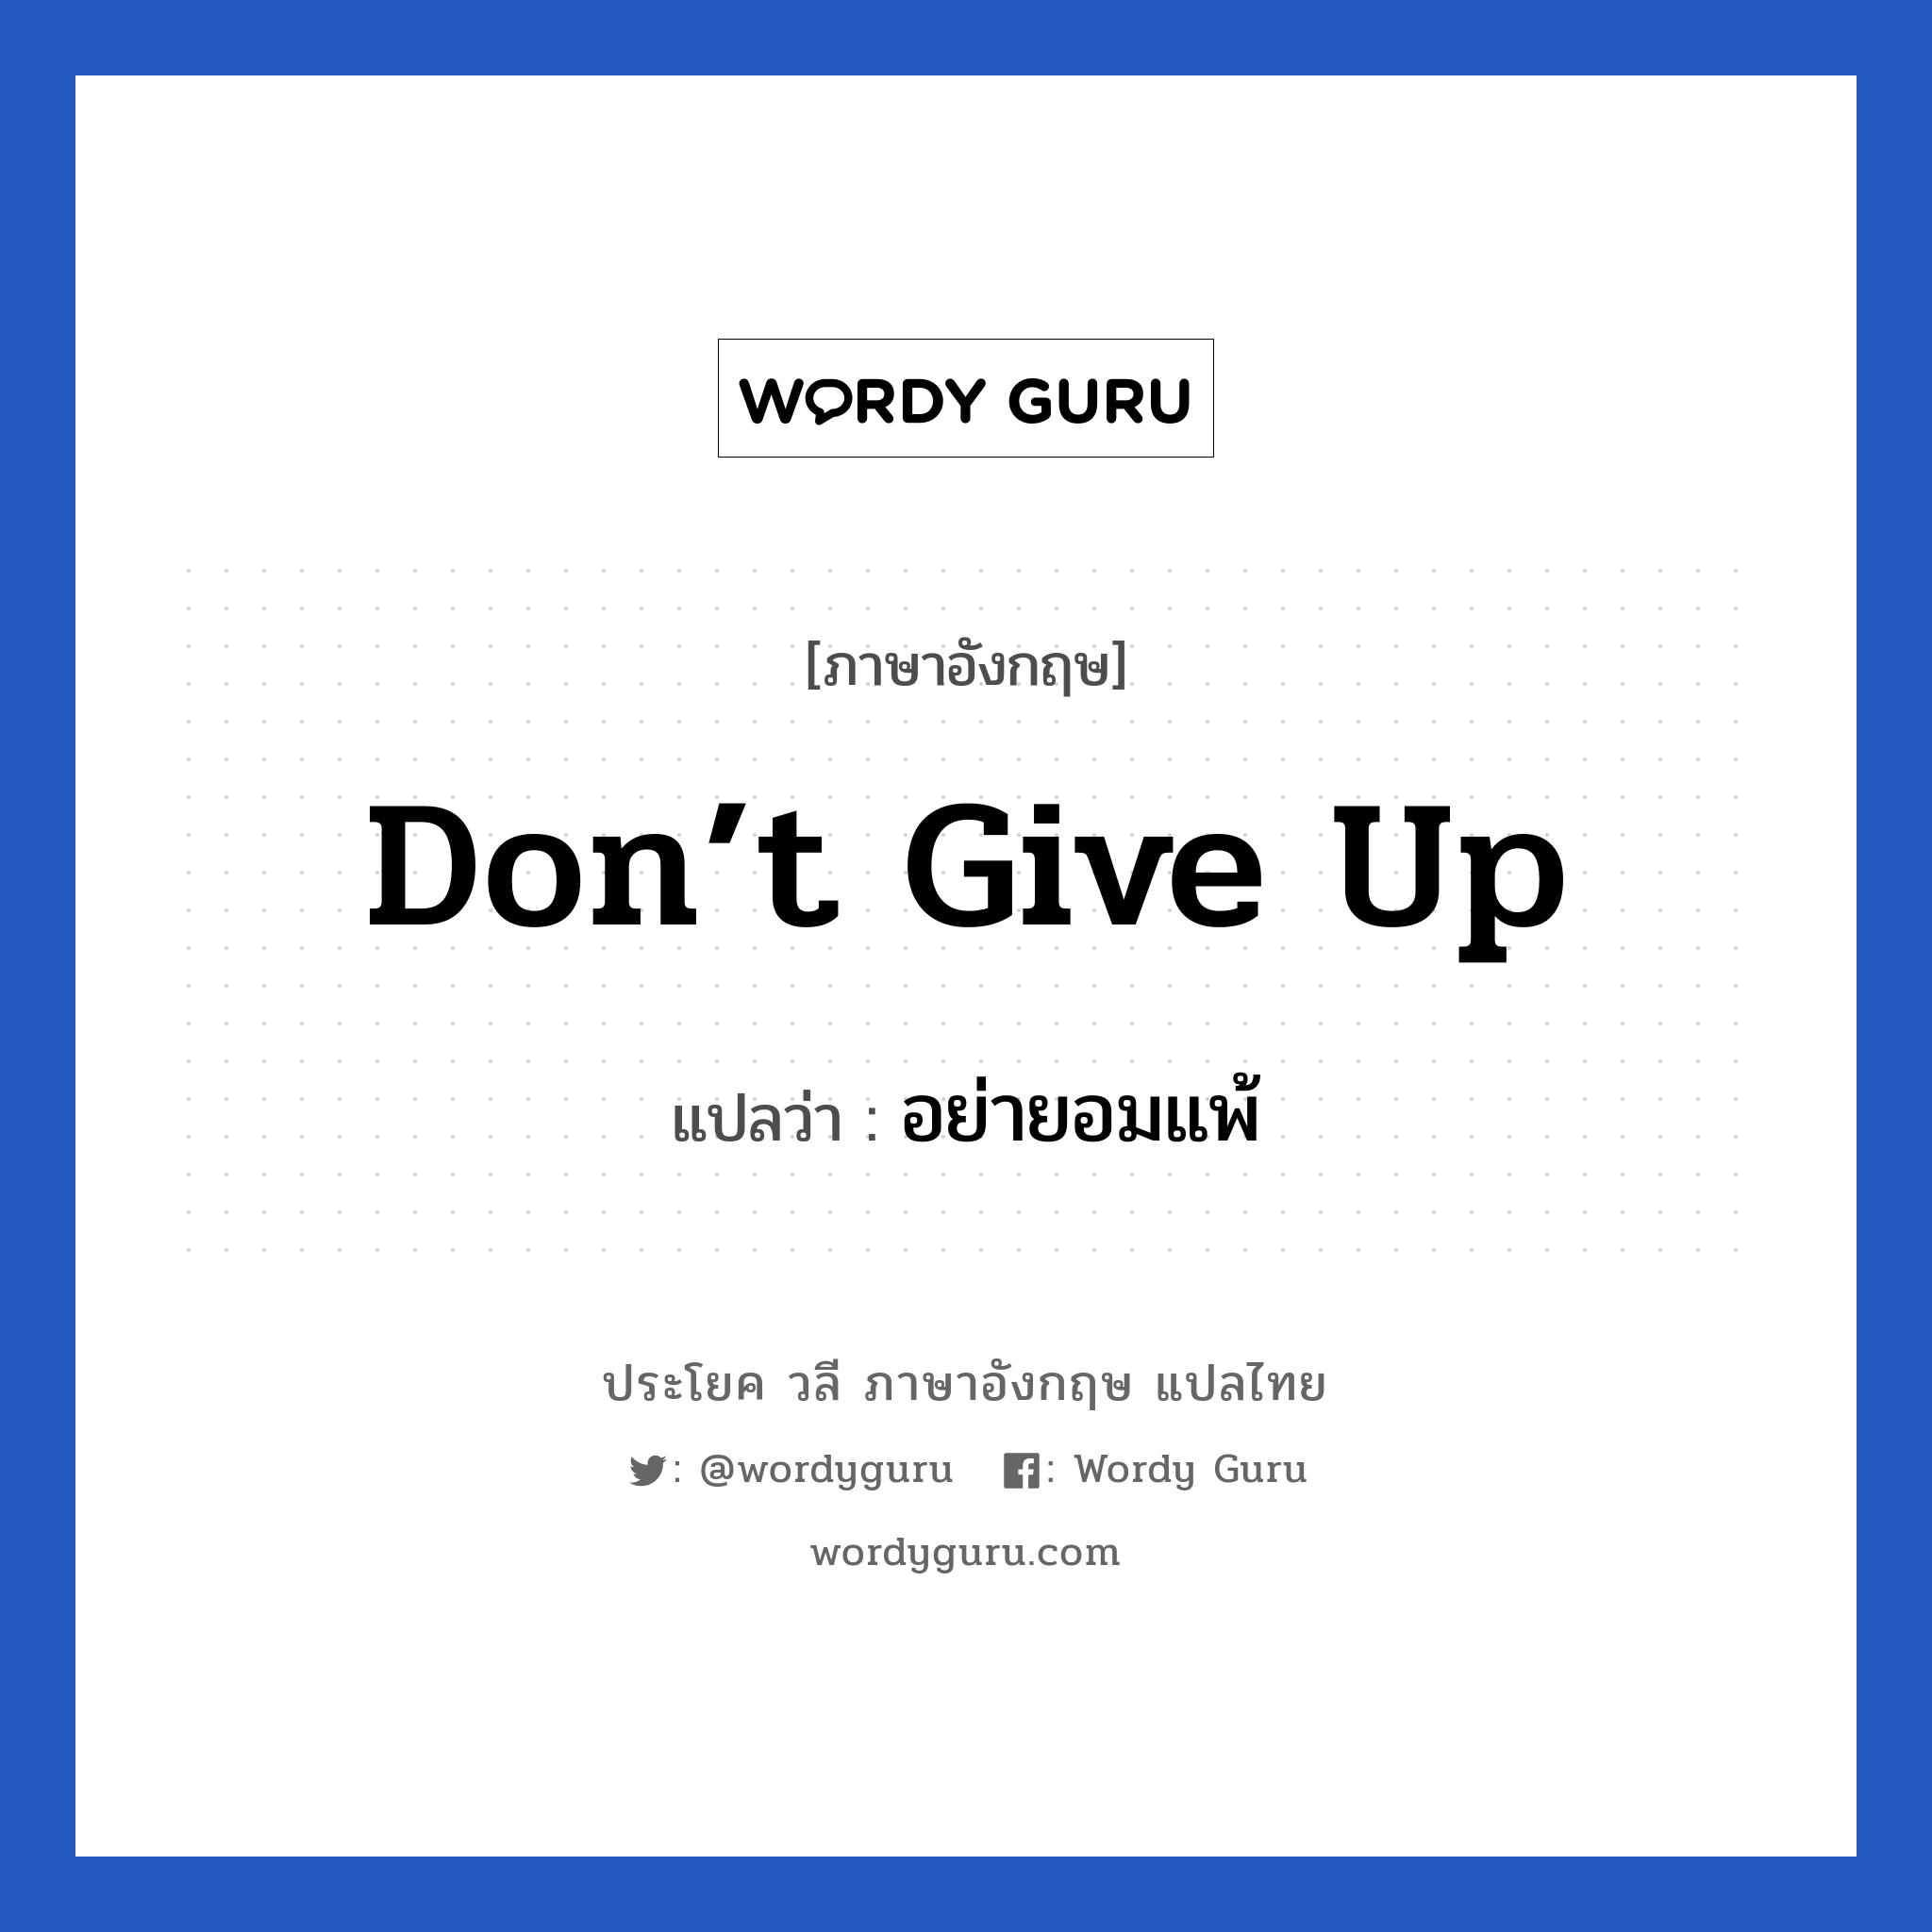 don’t give up แปลว่า? เป็นประโยคในกลุ่มประเภท ให้กำลังใจ, วลีภาษาอังกฤษ don’t give up แปลว่า อย่ายอมแพ้ หมวด ให้กำลังใจ